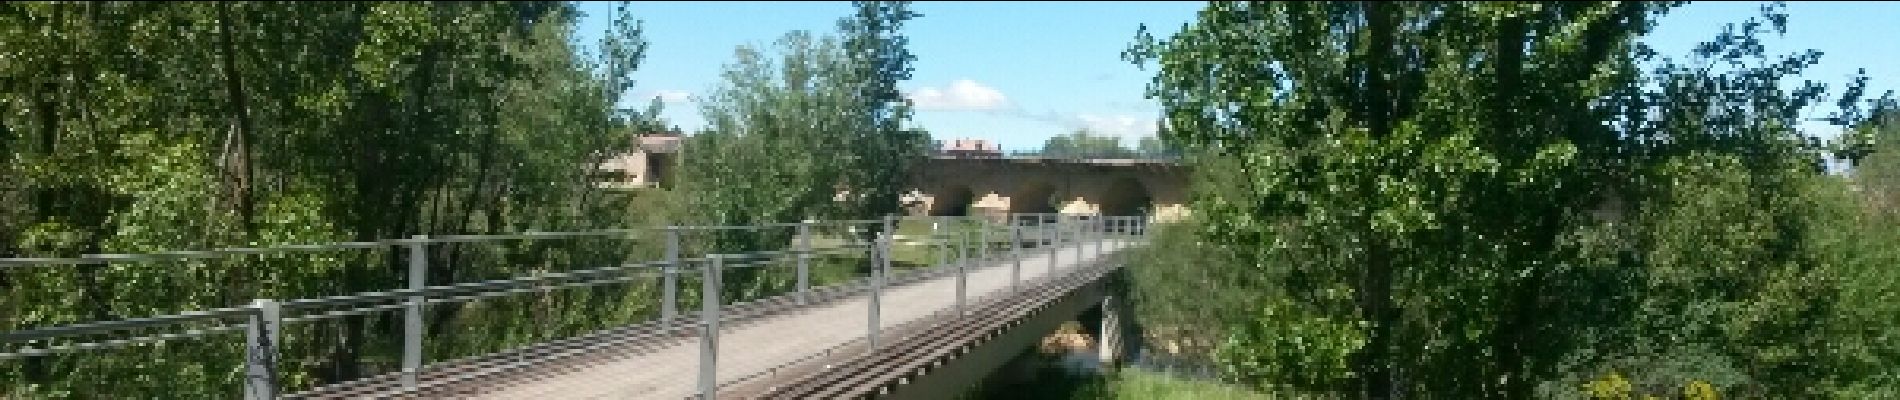 Excursión Otra actividad El Burgo Ranero - el borgo ranero puente villarente - Photo